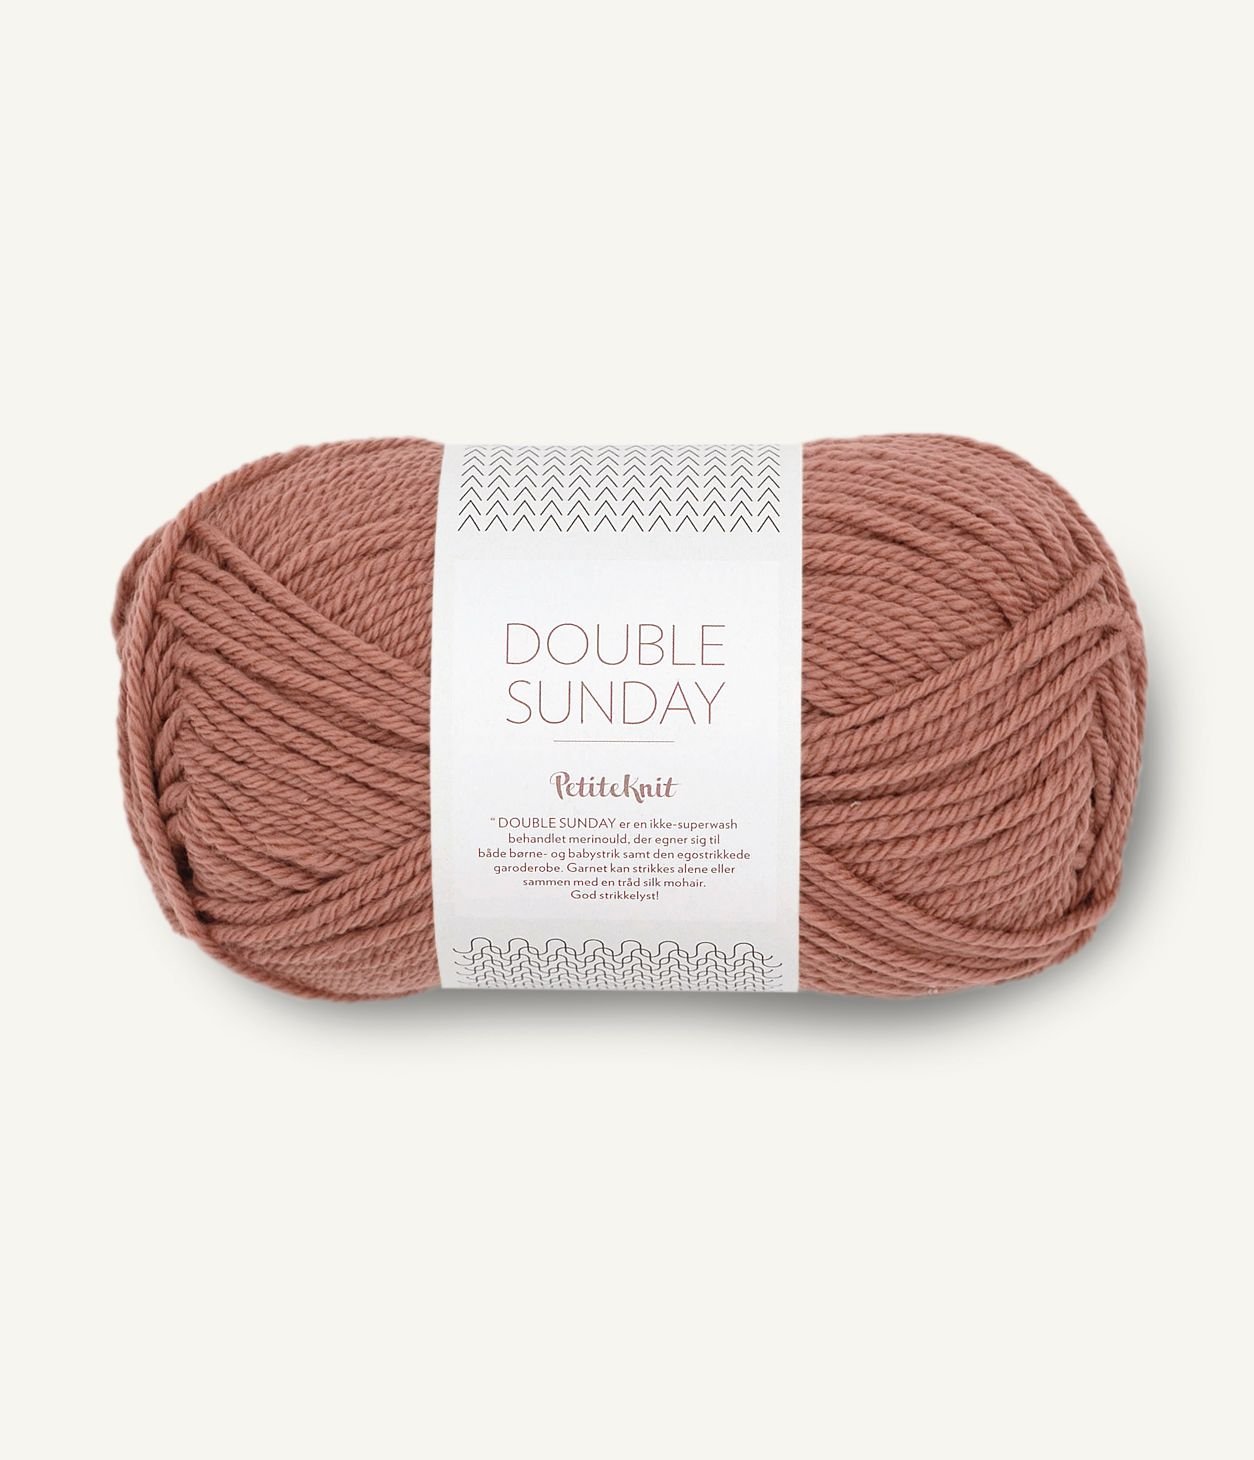 sandnes garn double Sunday by petiteknit yarn dusty rouge #3553